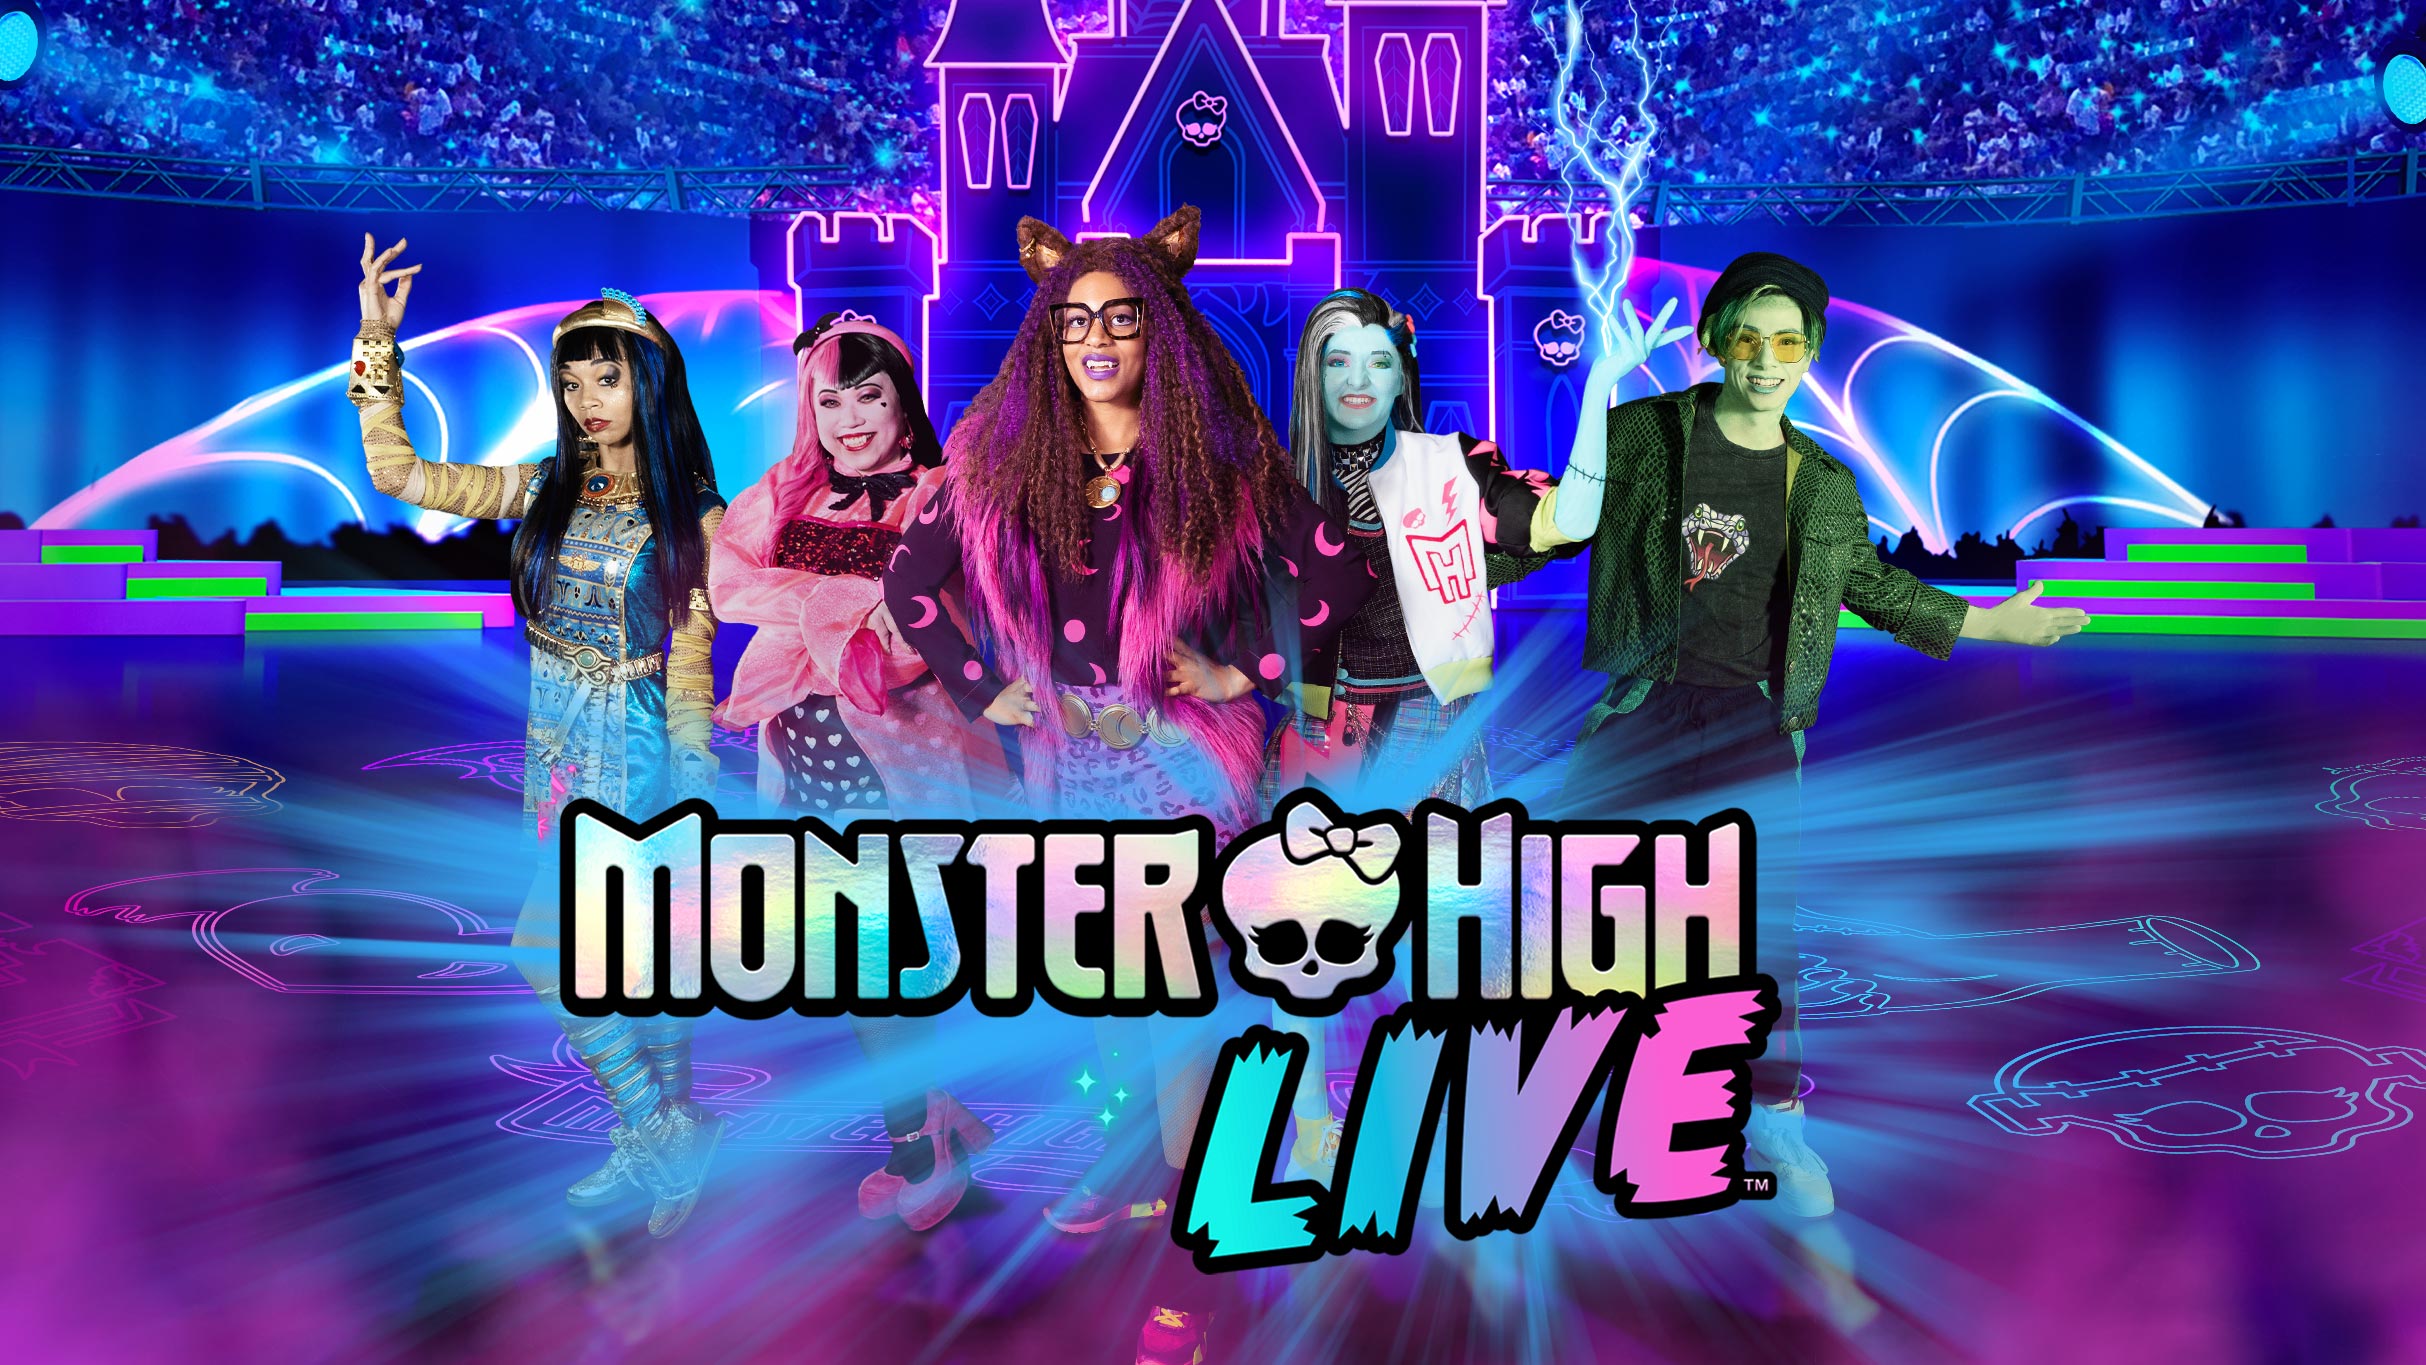 Monster High Live in Hoffman Estates promo photo for Mattel presale offer code